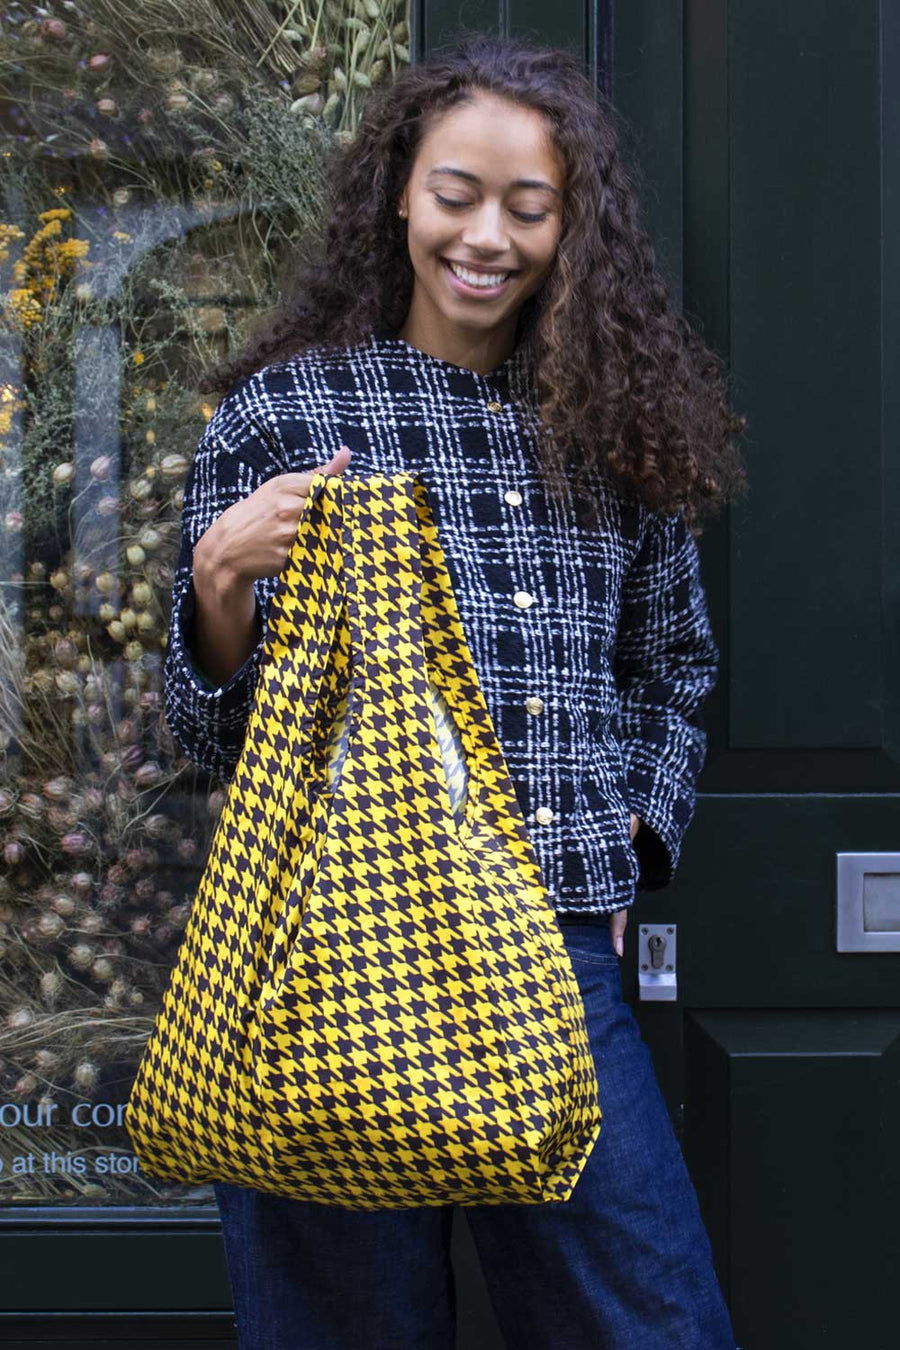 Kind Bag Dogtooth Yellow and Black Medium Reusable Bag Lifestyle